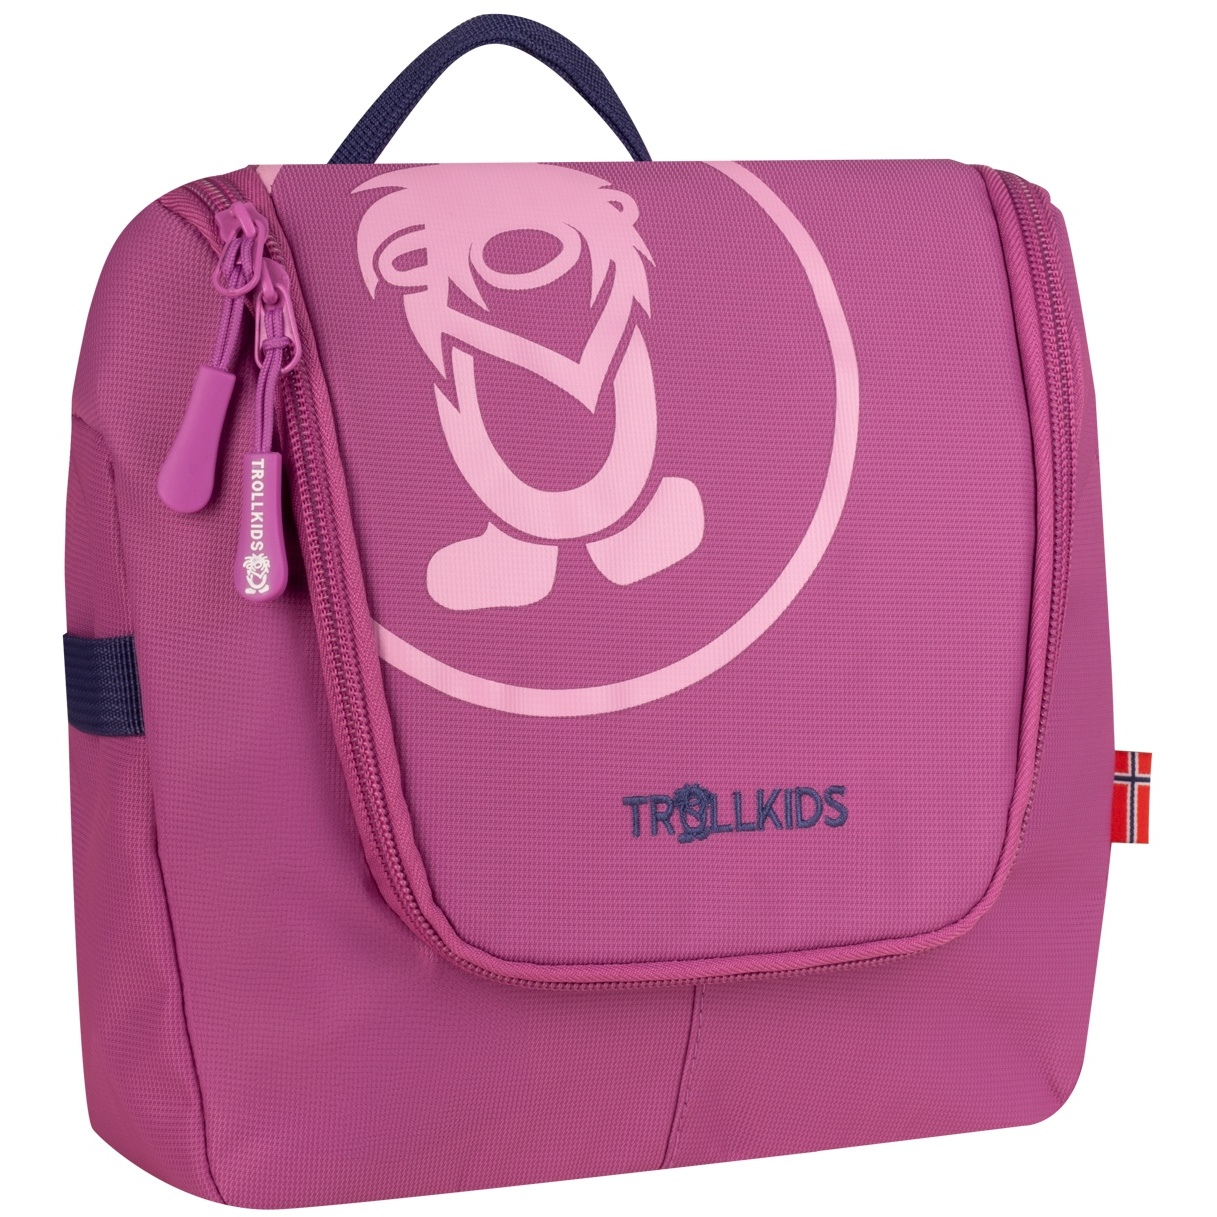 Picture of Trollkids Wash Bag 5L Kids - violet blue/mallow pink/wild rose